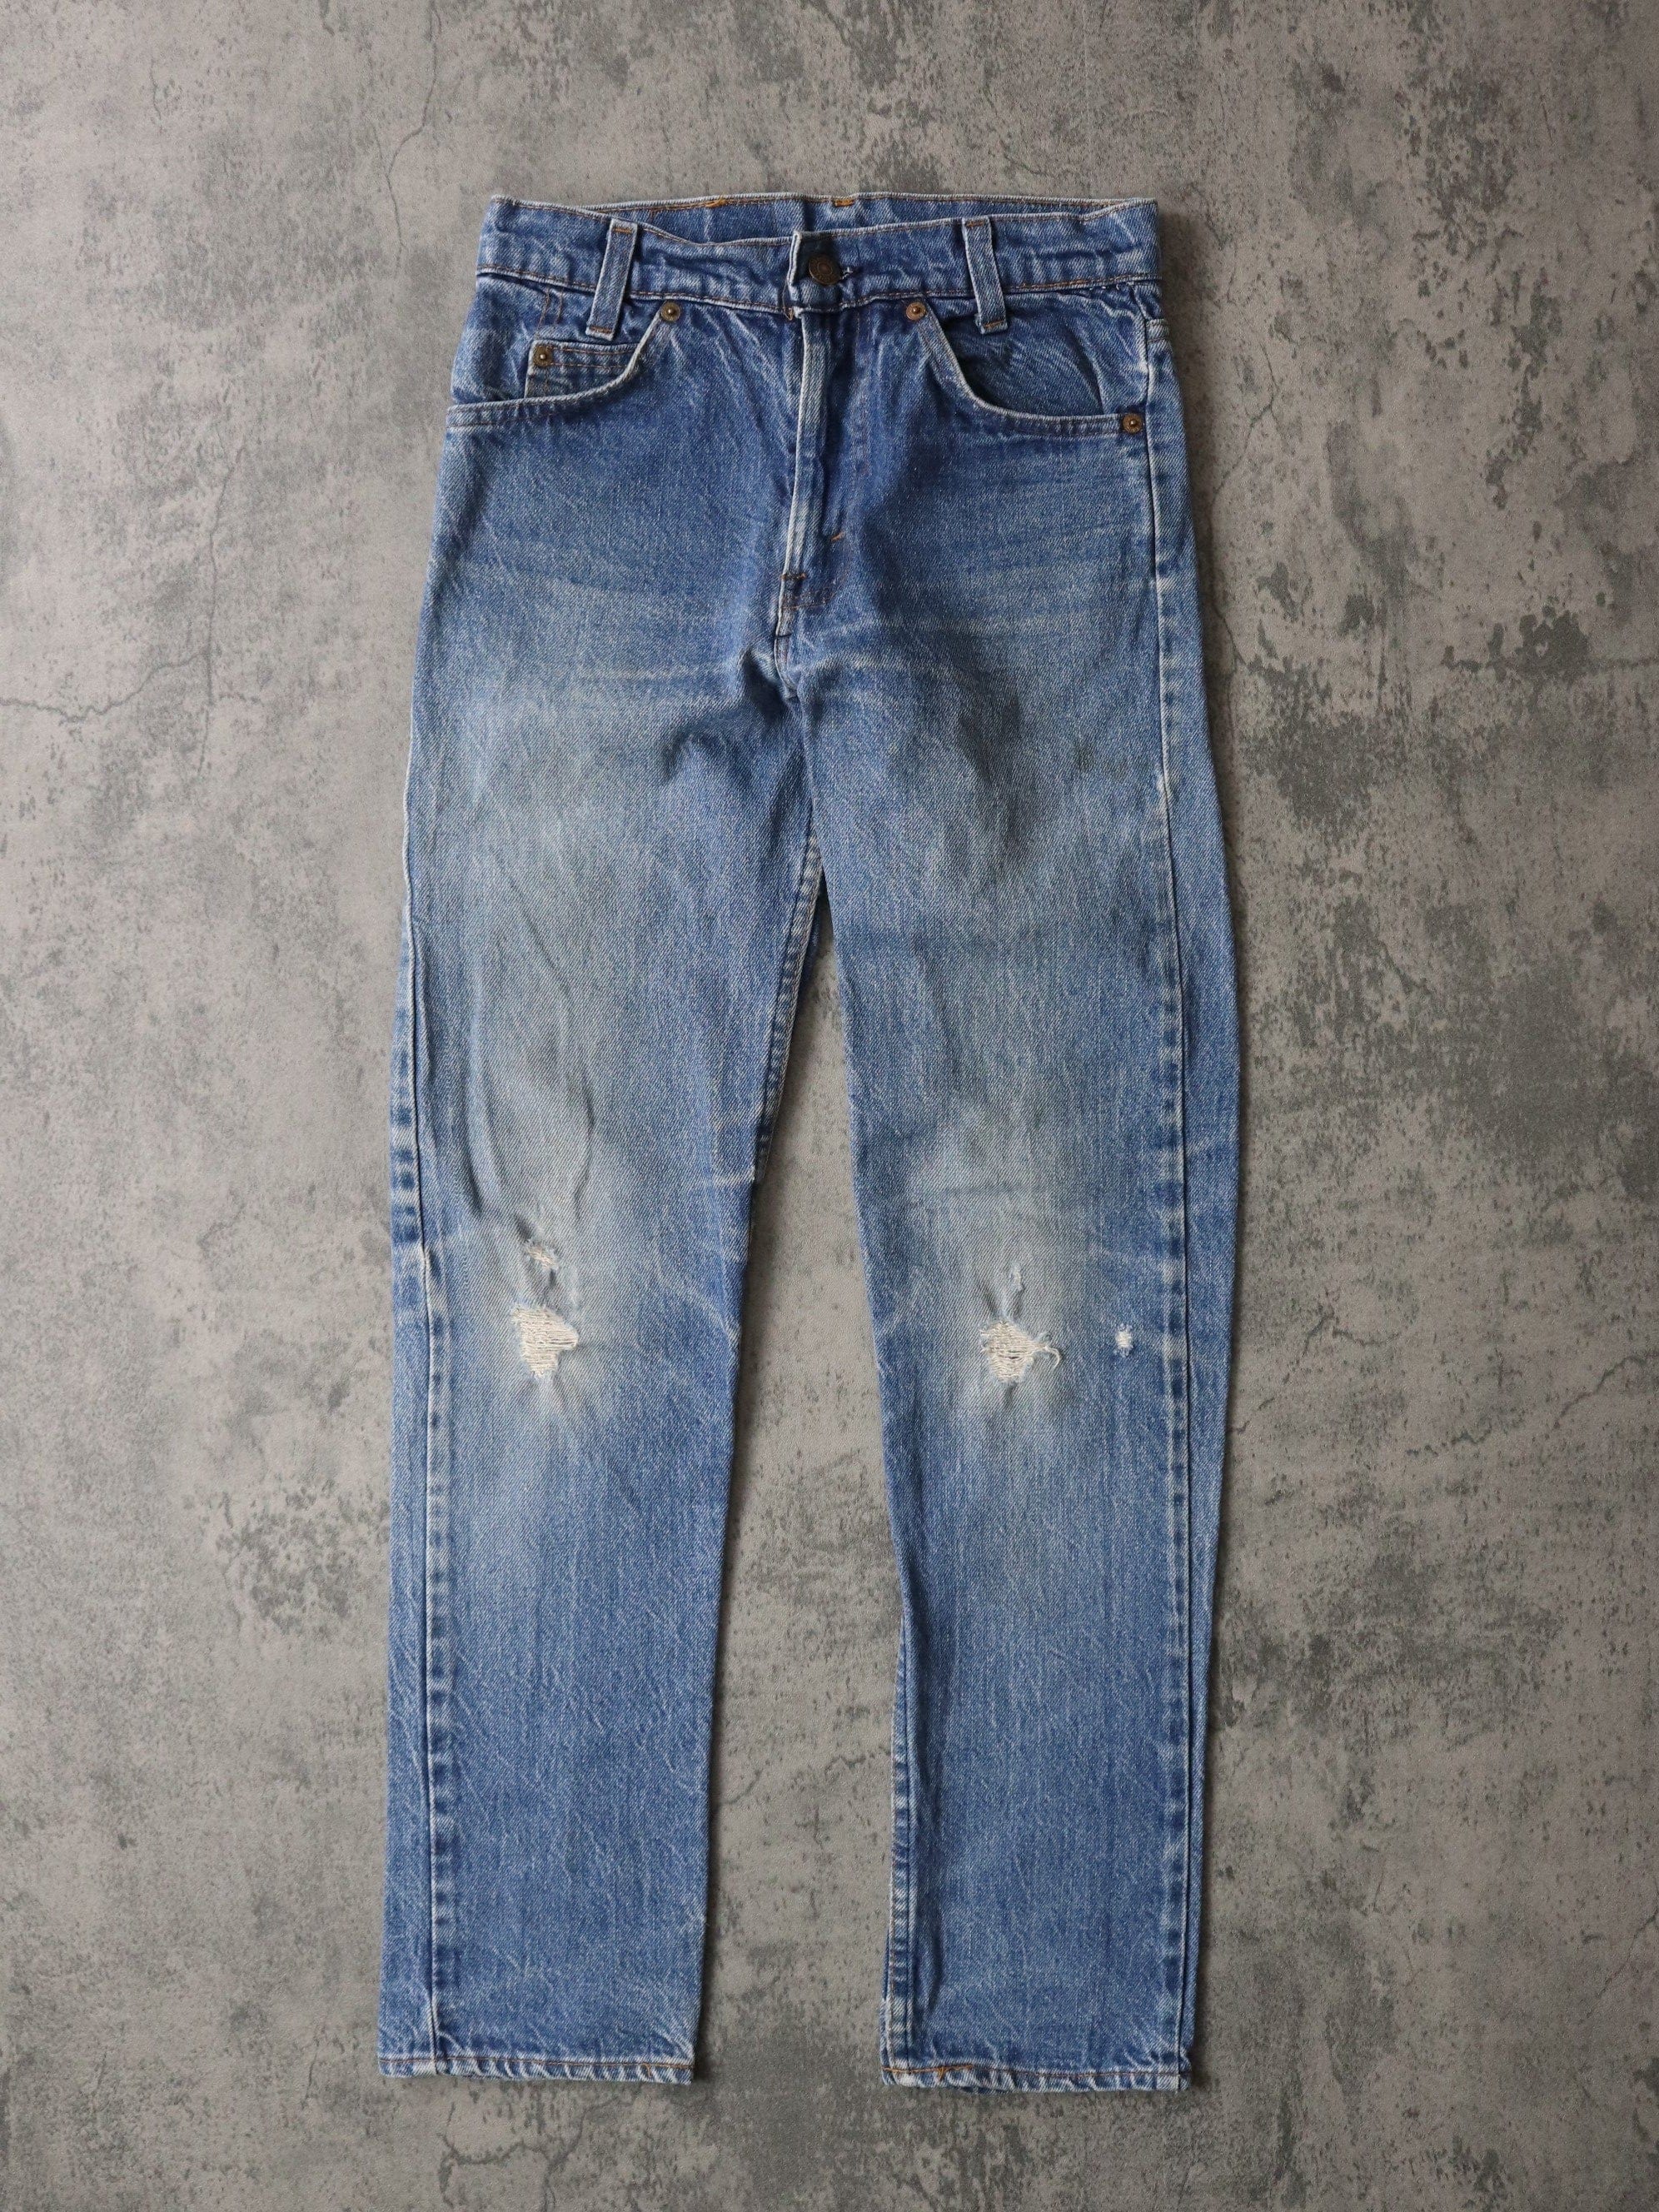 Vintage Levi's Pants Fits Youth 27 x 30 Blue Denim Jeans Student